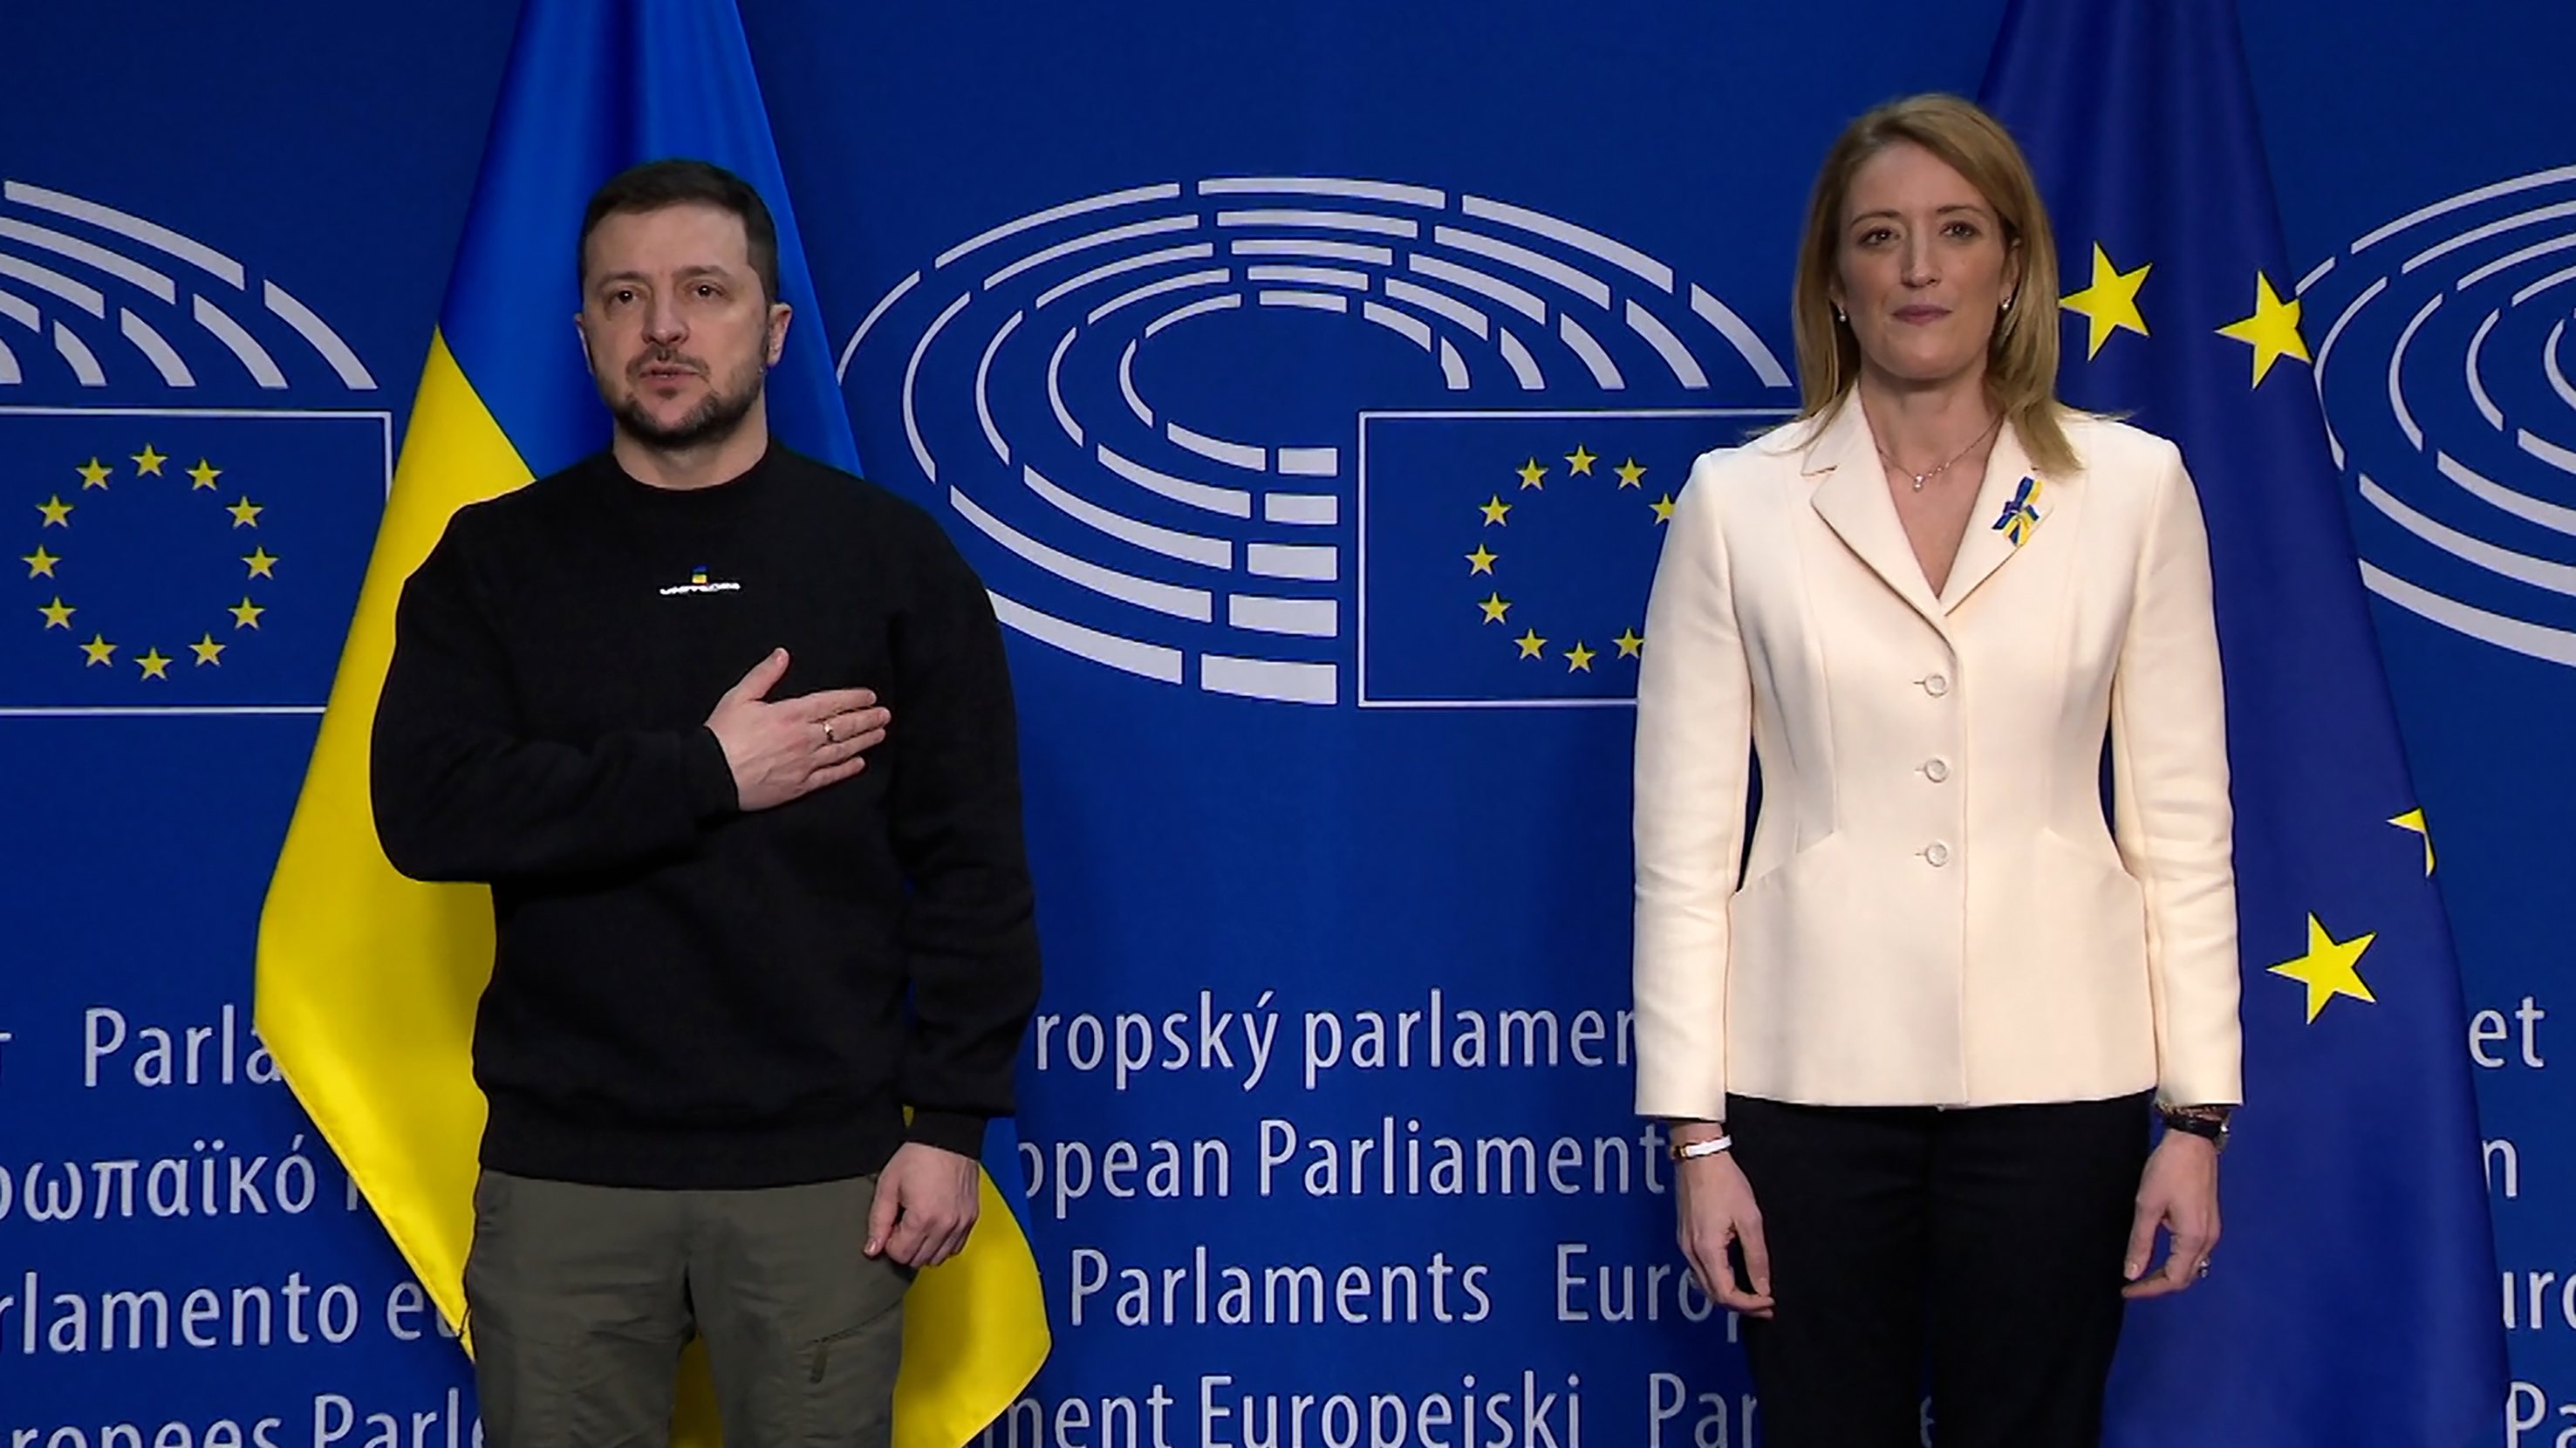 Zelensky durante a intervenção no Parlamento Europeu